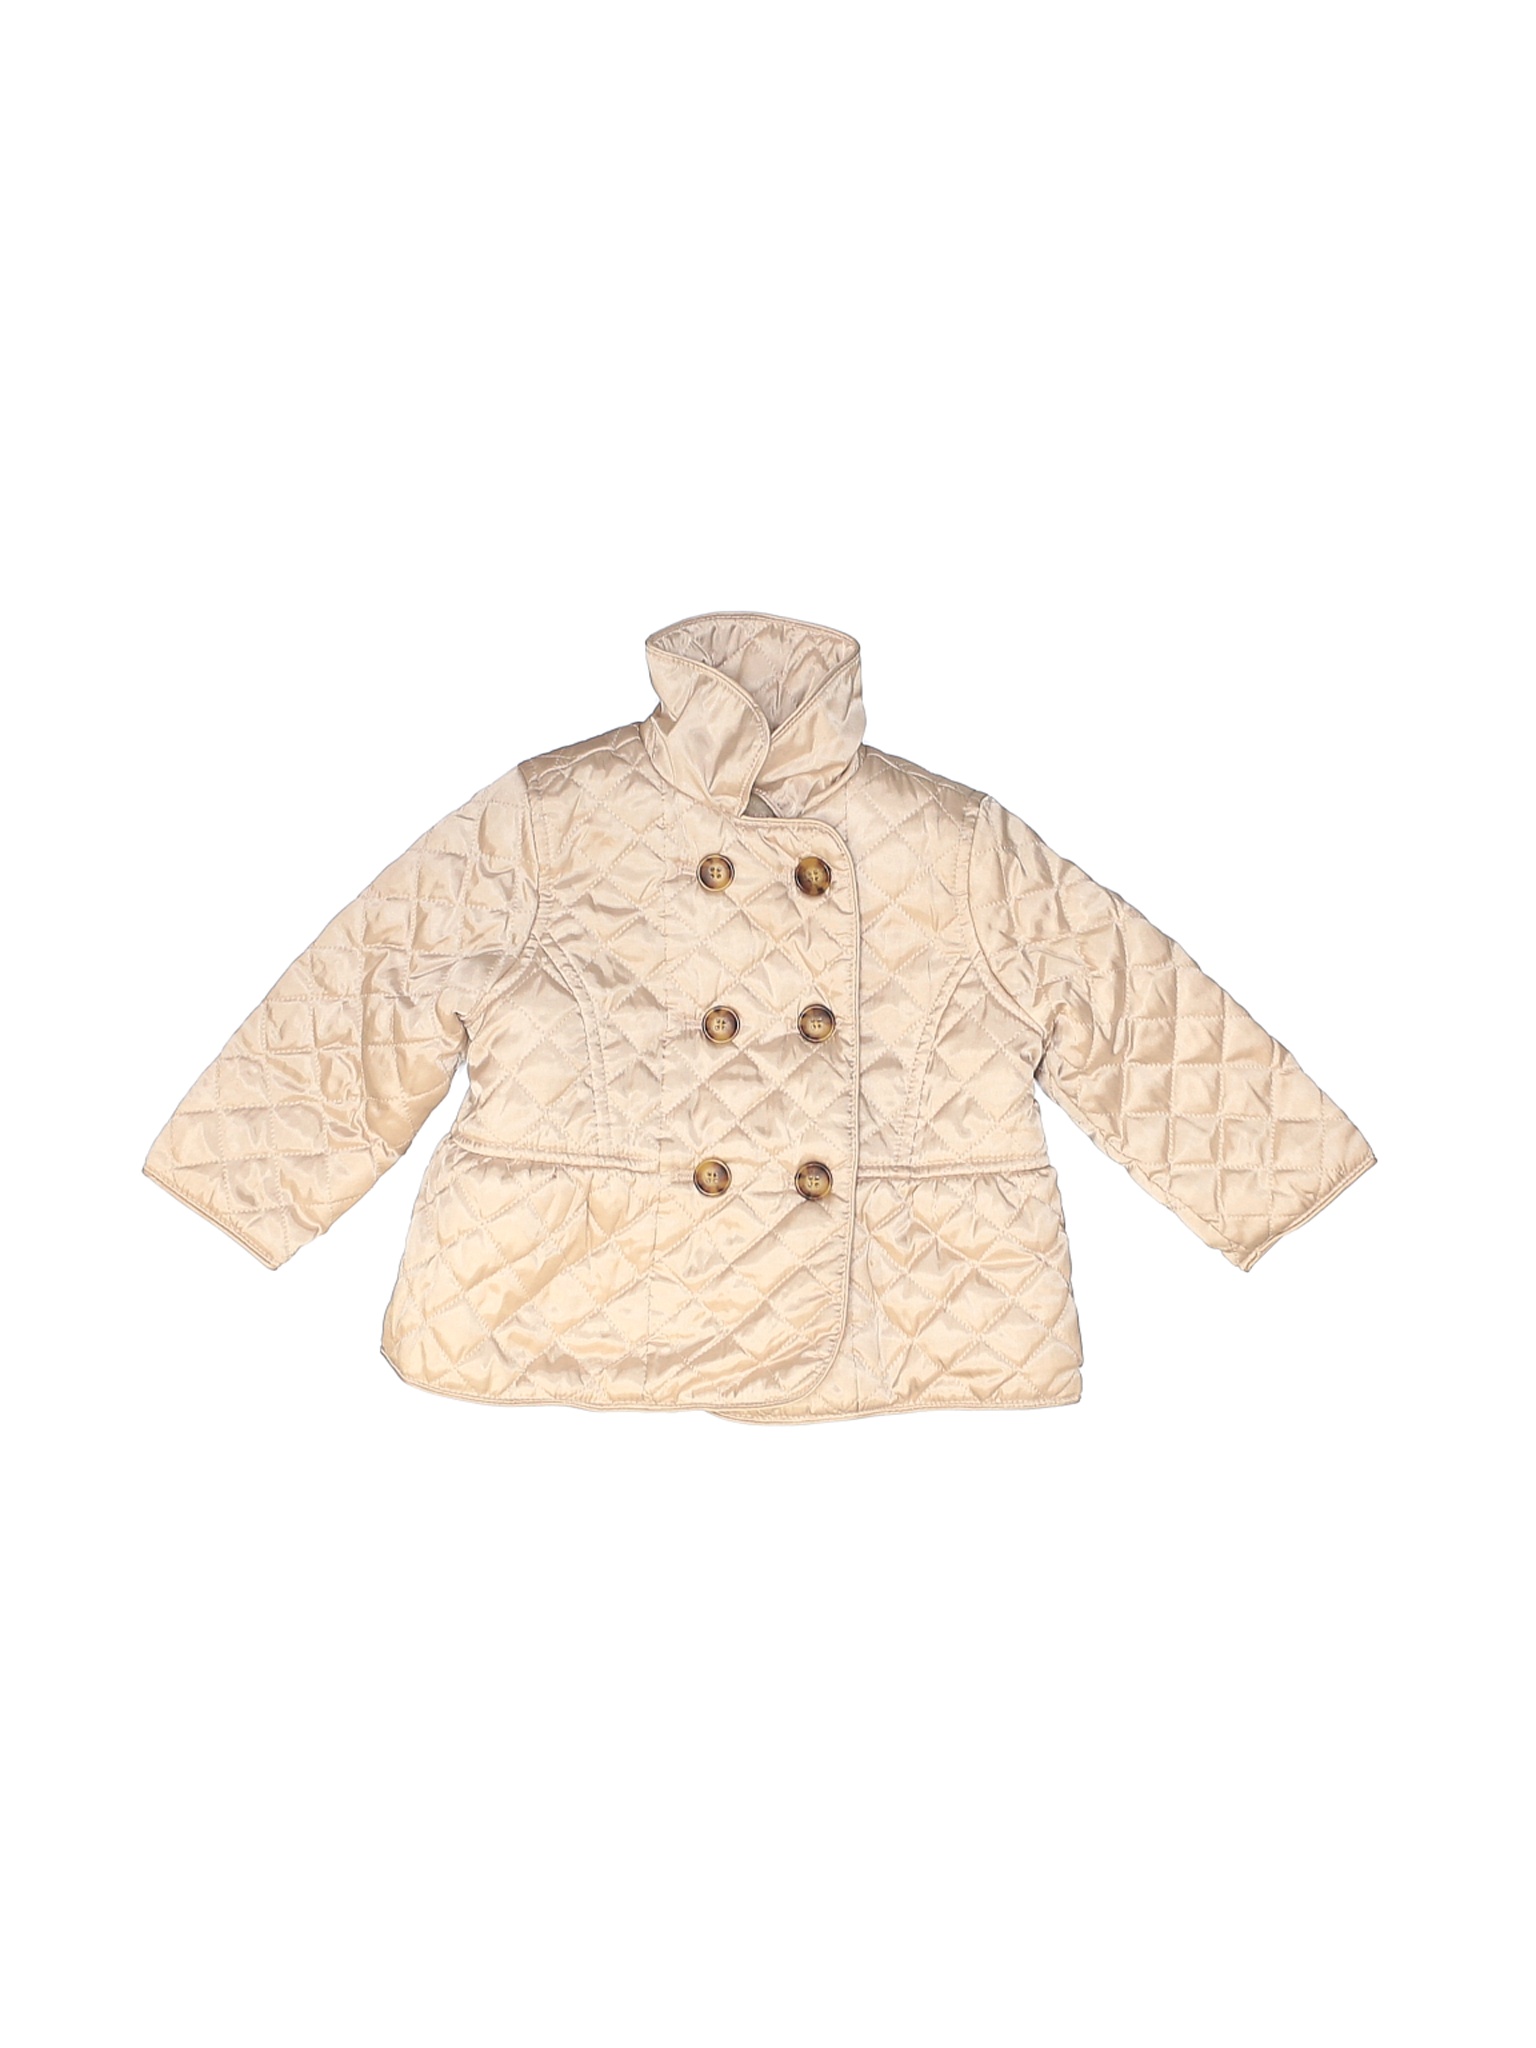 Baby Gap Girls Brown Snow Jacket 12-18 Months | eBay